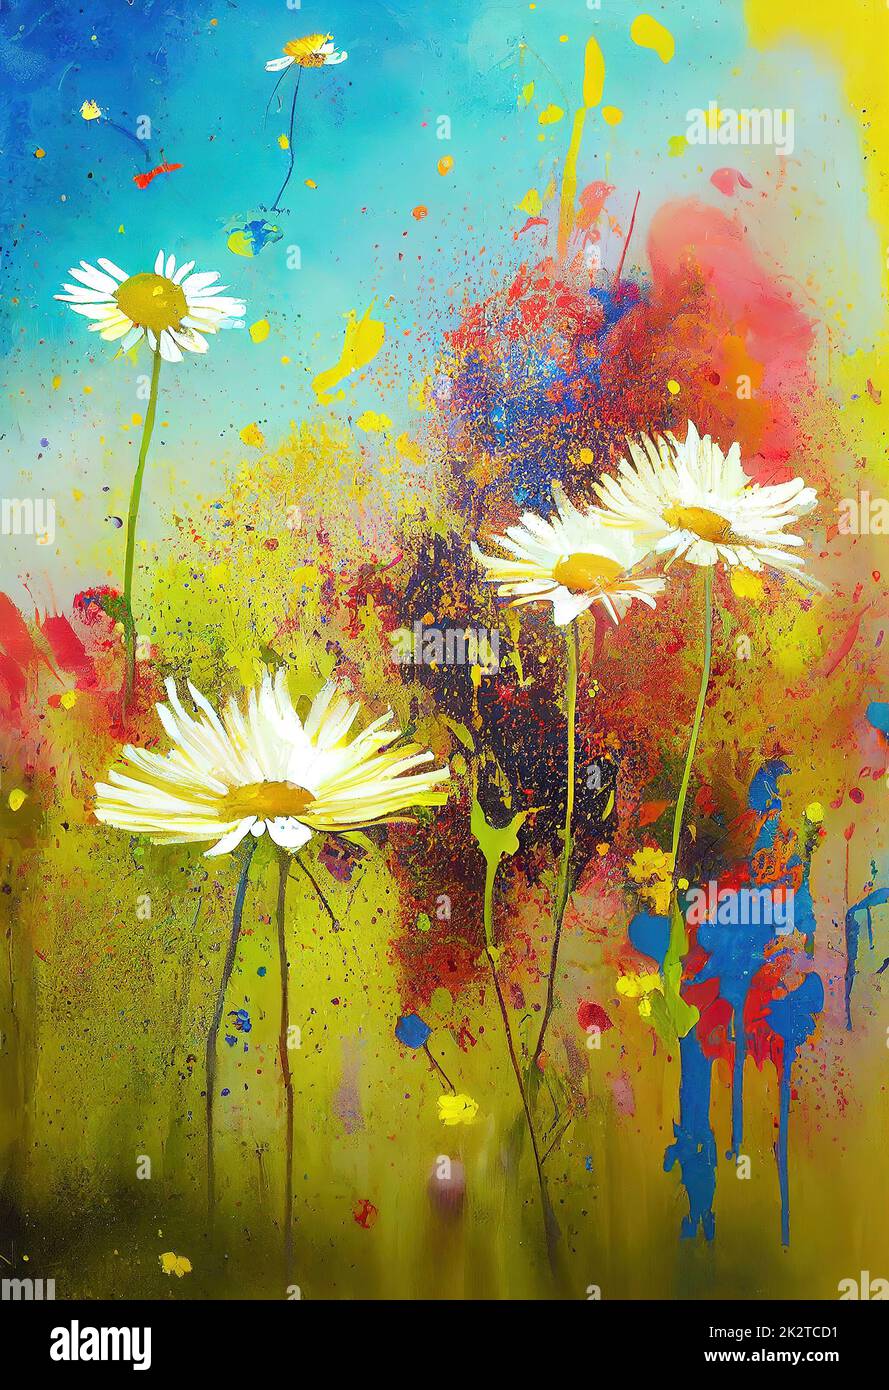 Peinture abstraite colorée avec marguerites blanches. Illustration numérique. Banque D'Images